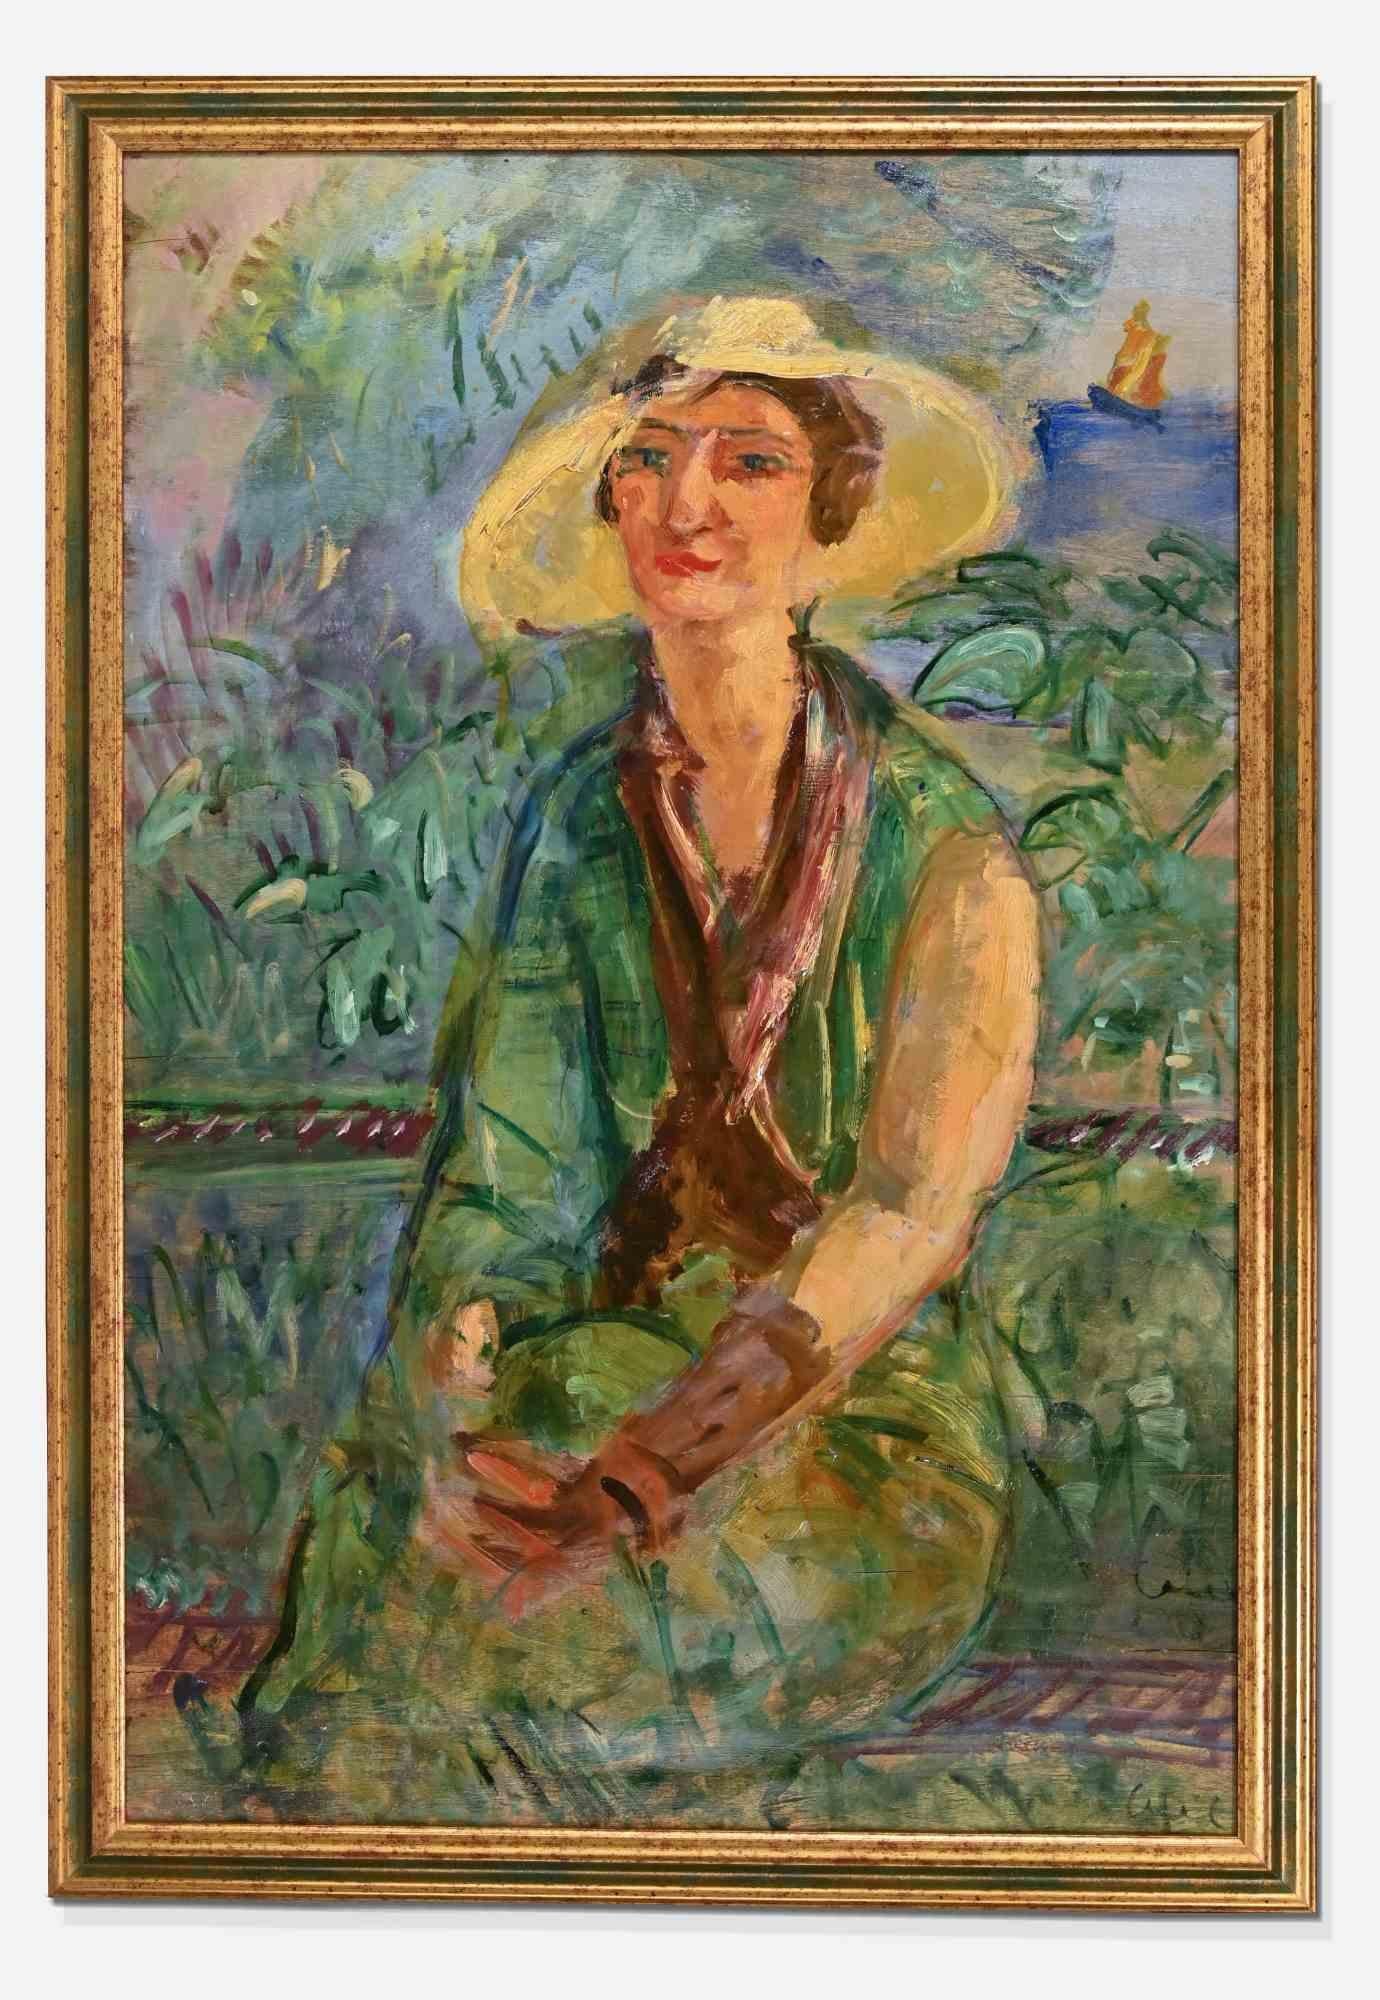 Frau im Garten ist ein modernes Kunstwerk, das Antonio Feltrinelli in den 1930er Jahren geschaffen hat.

Inklusive Rahmen: 98 x 4 x 68 cm

Gemischte farbige Ölmalerei auf Karton

Antonio Feltrinelli (Mailand, 1887 - Gargnano, 1942)
Er wurde am 1.